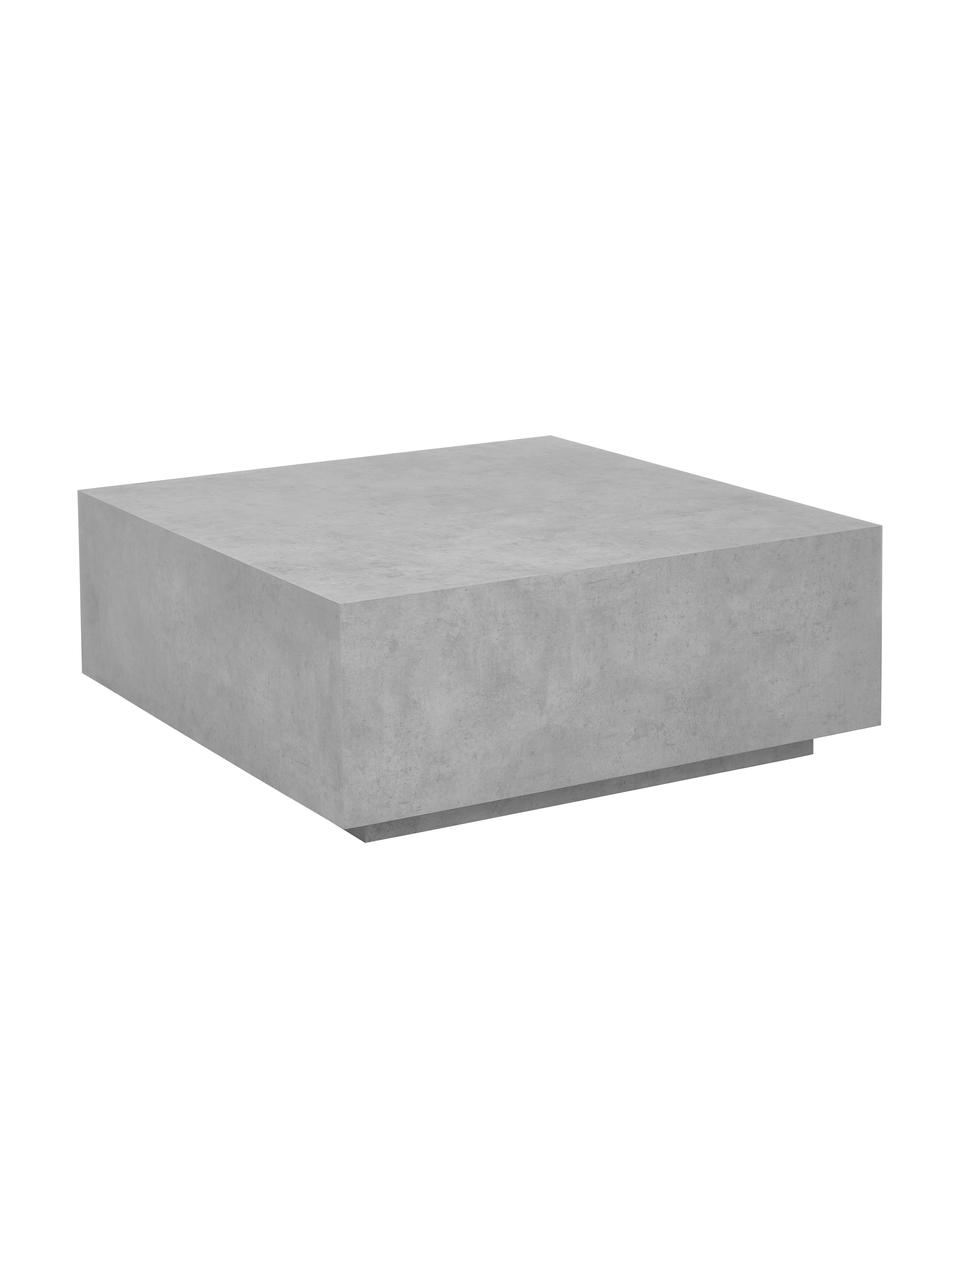 Tavolino da salotto effetto cemento Lesley, Pannello di fibra a media densità (MDF), rivestito con lamina melaminica, legno di mango, Grigio effetto cemento, Larg. 90 x Alt. 35 cm